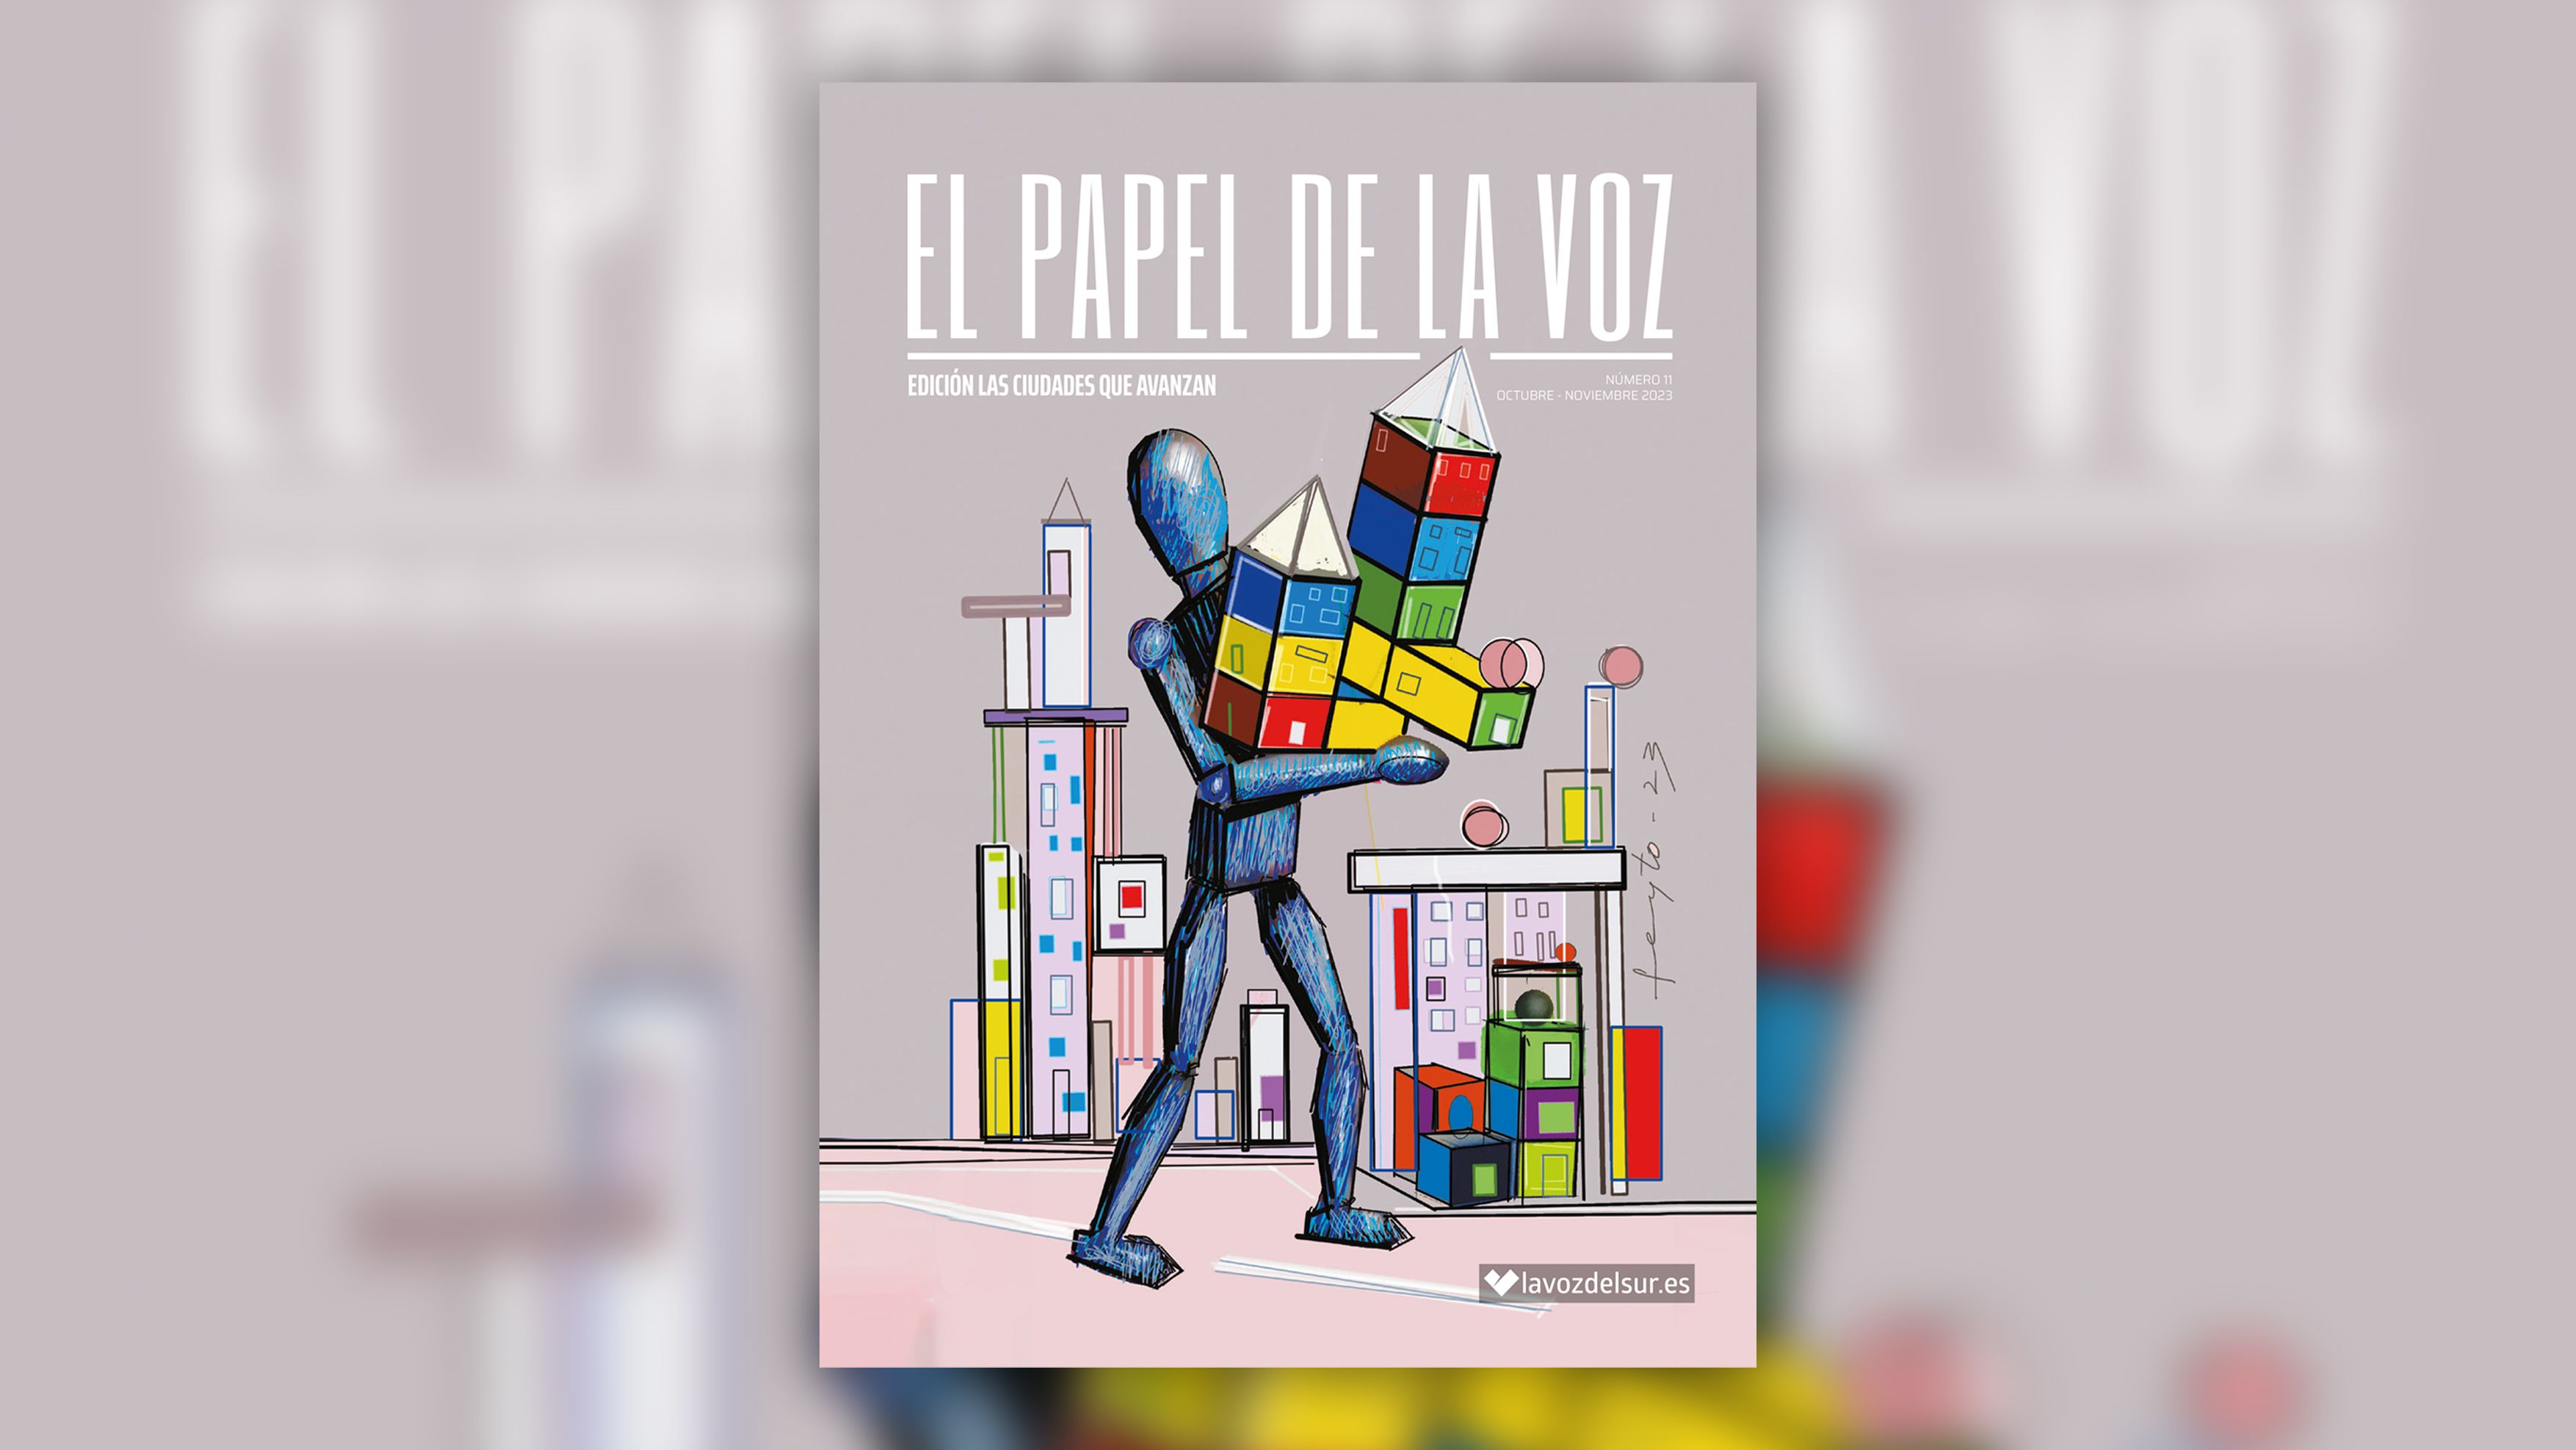 Lee aquí el nuevo número de la revista 'El Papel de La Voz' (edición Las Ciudades que Avanzan).